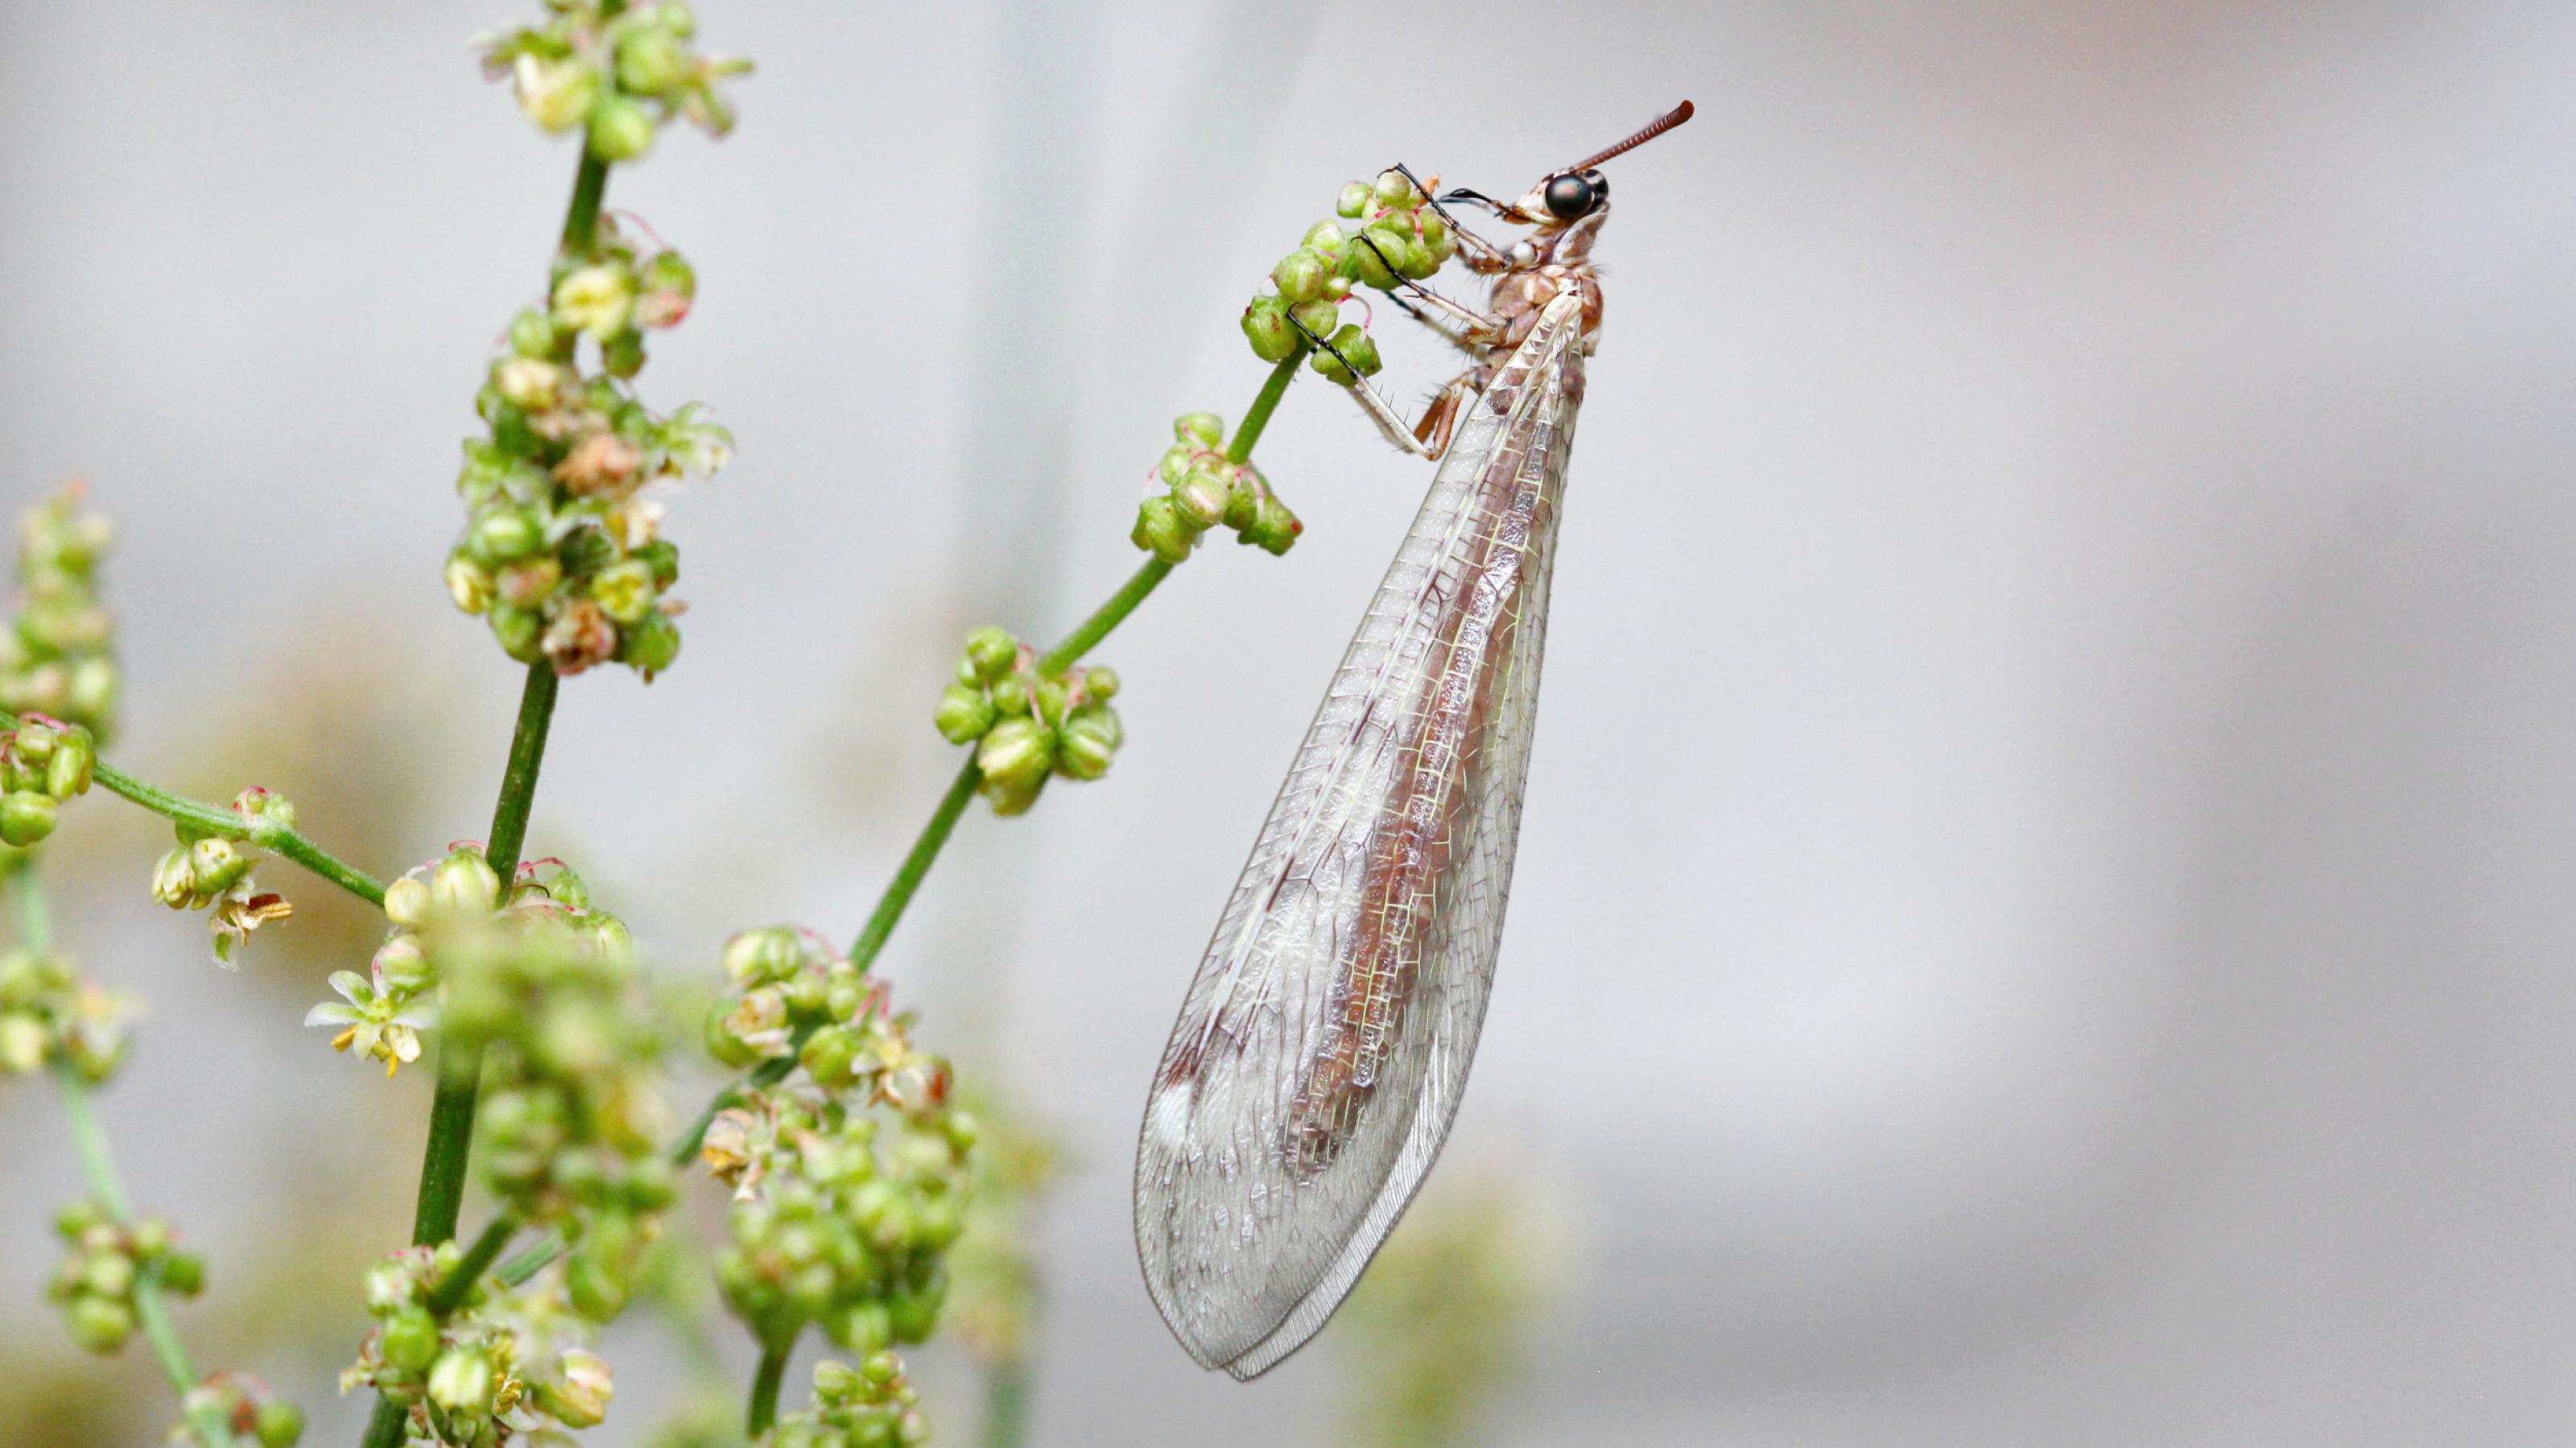 Ein bräunliches Insekt mit langen, transparenten Flügen klammert sich mit seinen sechs Beinen an einen grünen Pflanzenstängel mit zahlreichen kleinen, grün-rötlichen Blüten.